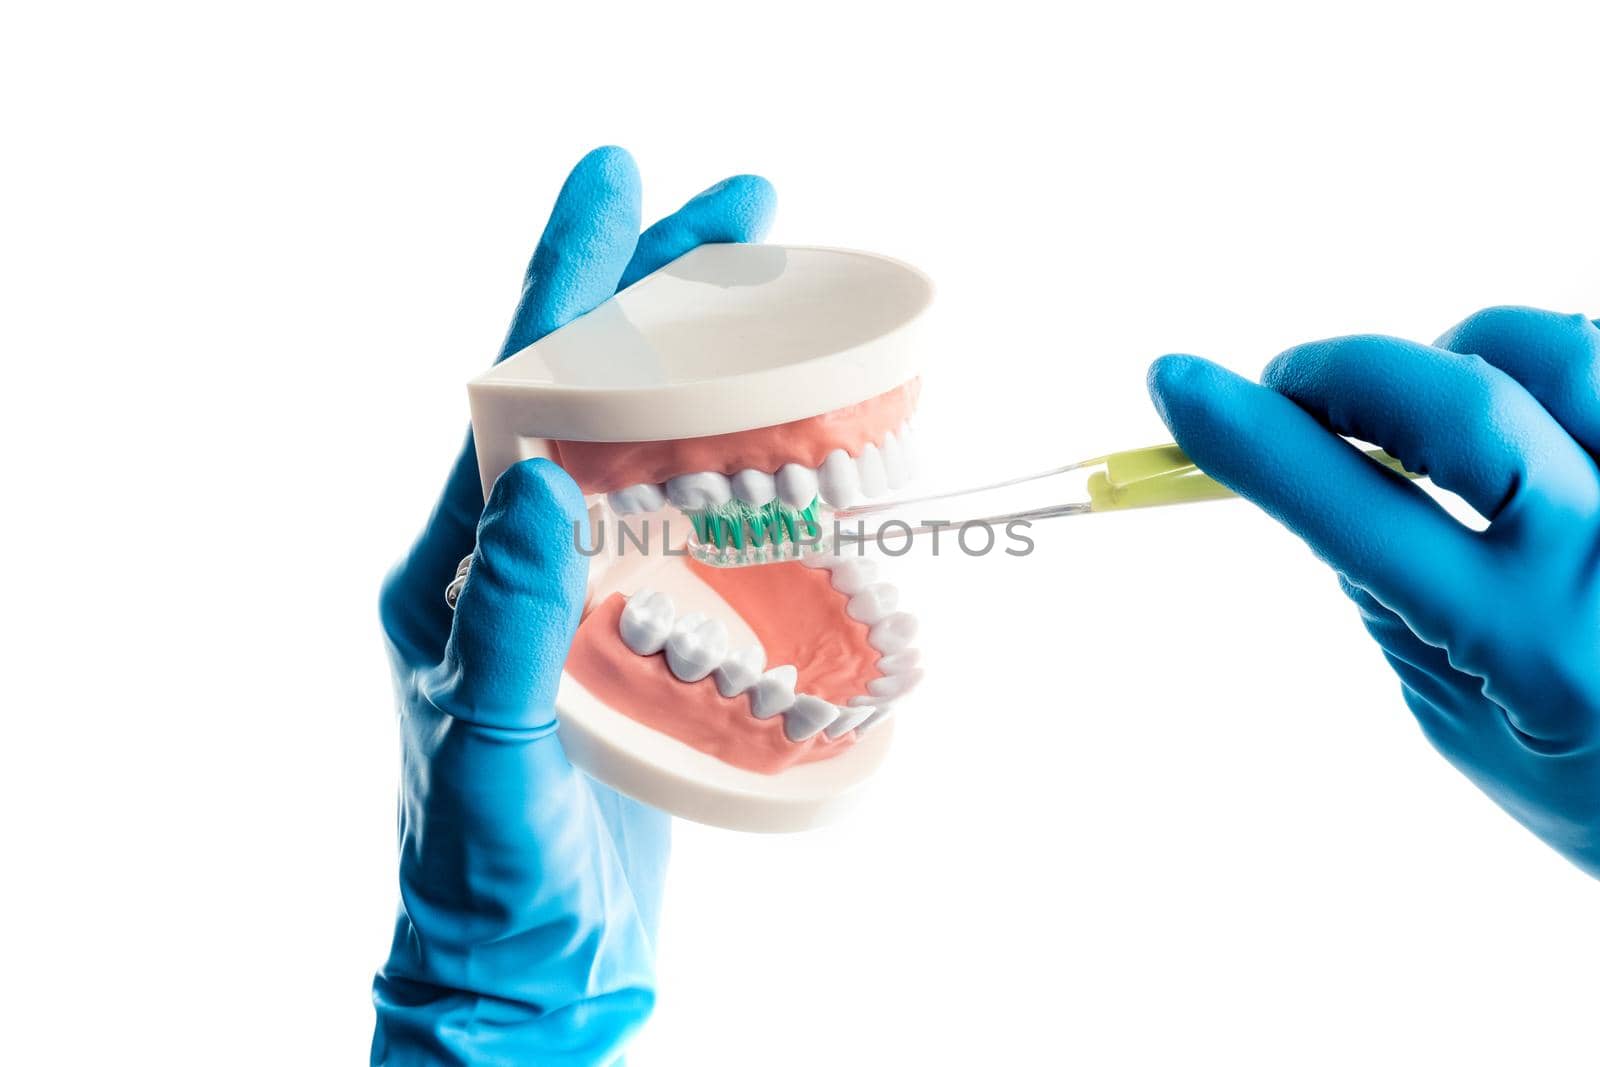 Hands in blue gloves brushing teeth model isolated by GekaSkr